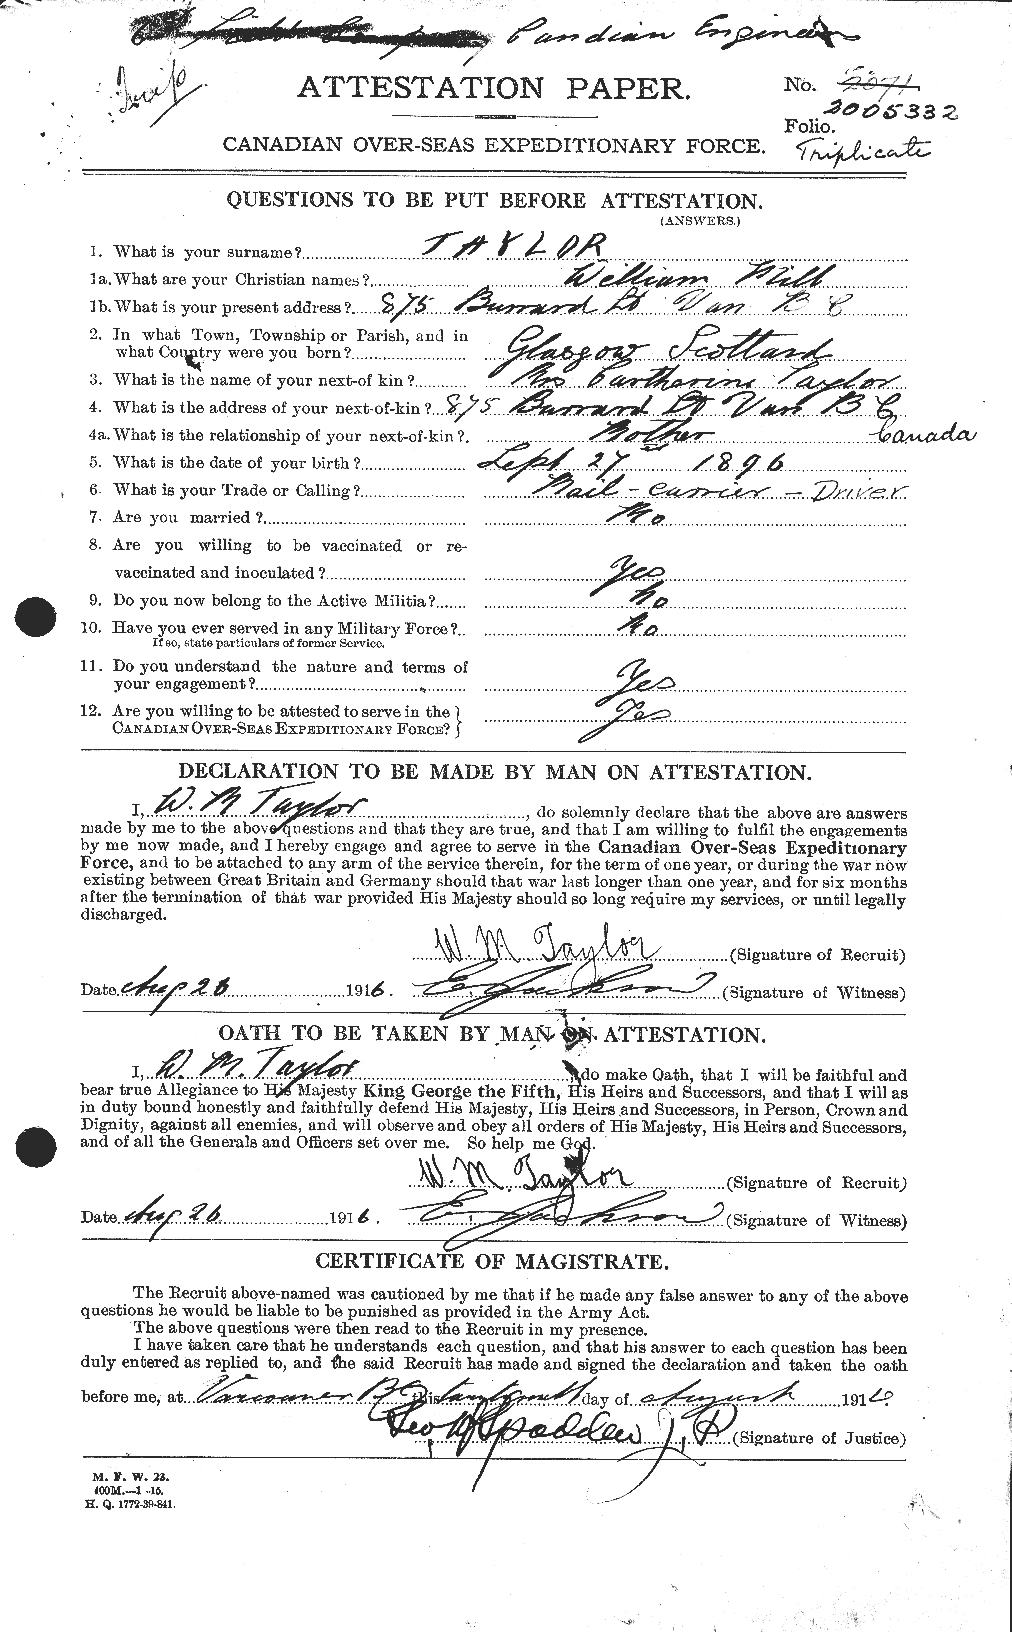 Dossiers du Personnel de la Première Guerre mondiale - CEC 628329a